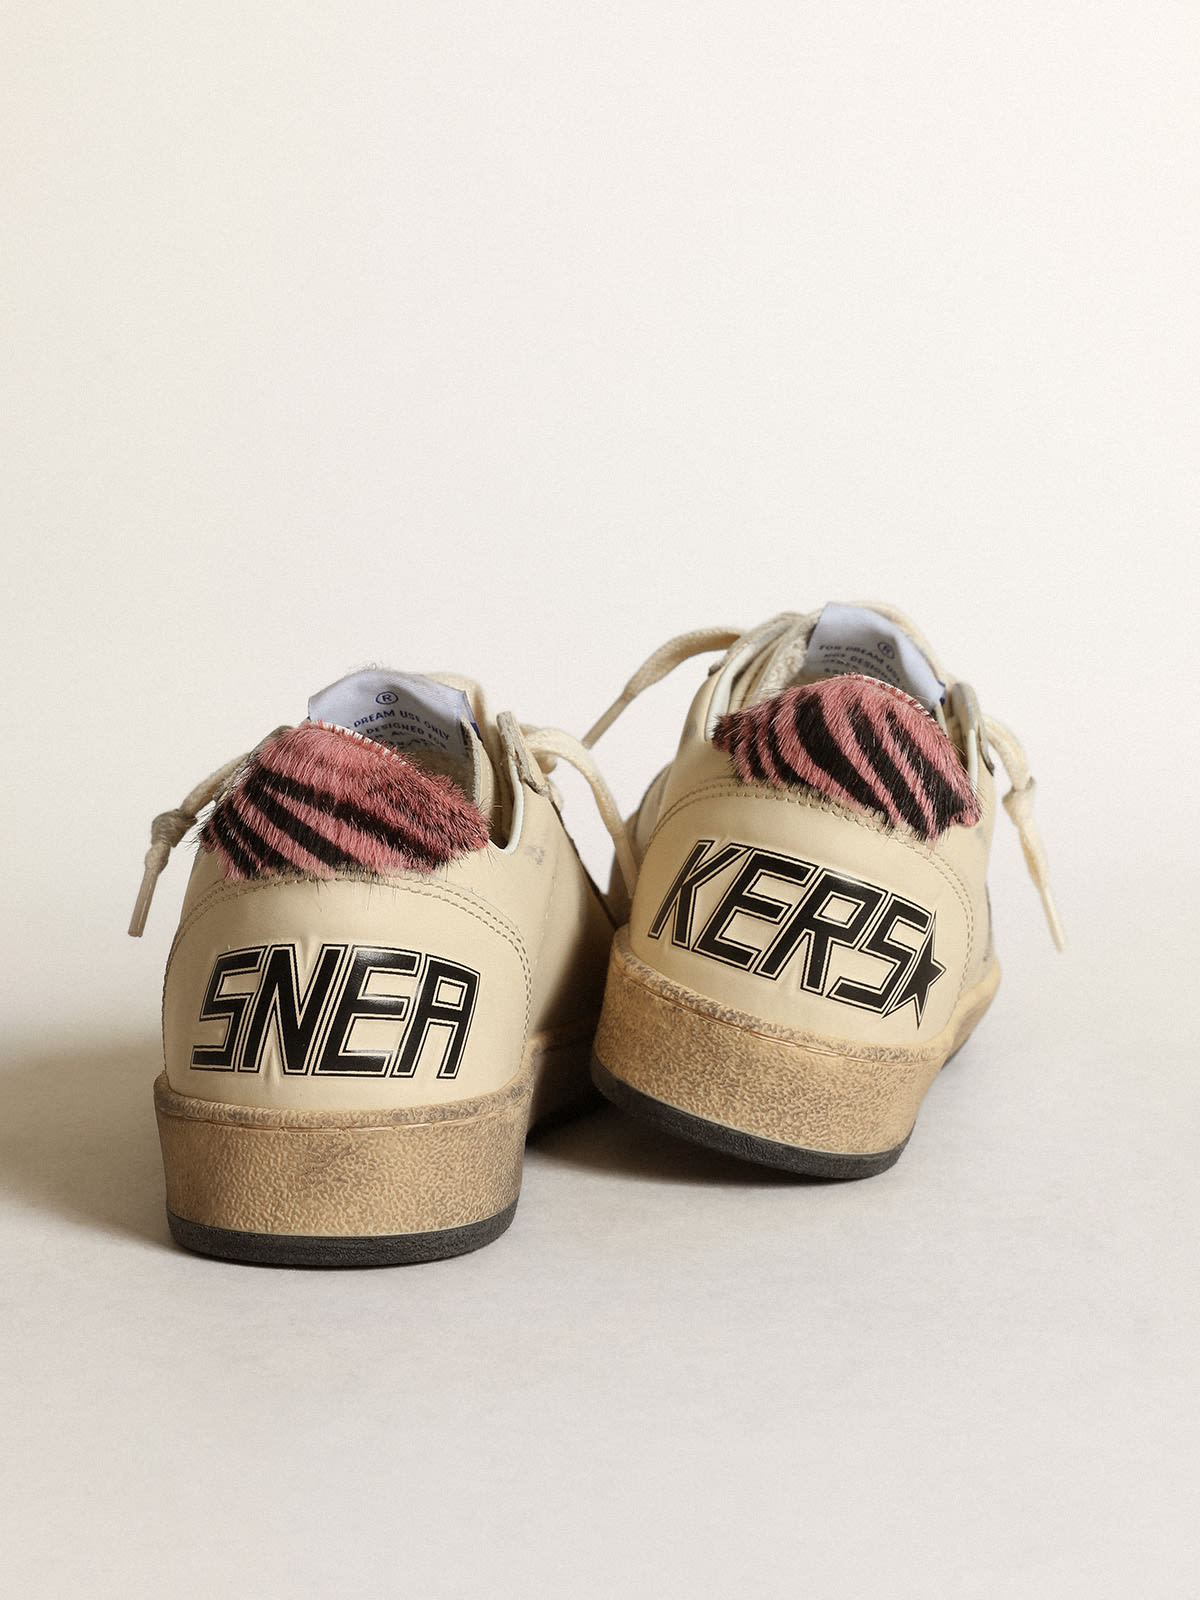 Golden Goose - Sneakers Ball Star LTD en cuir ivoire avec contrefort en cuir façon poulain zébré rose et noir in 